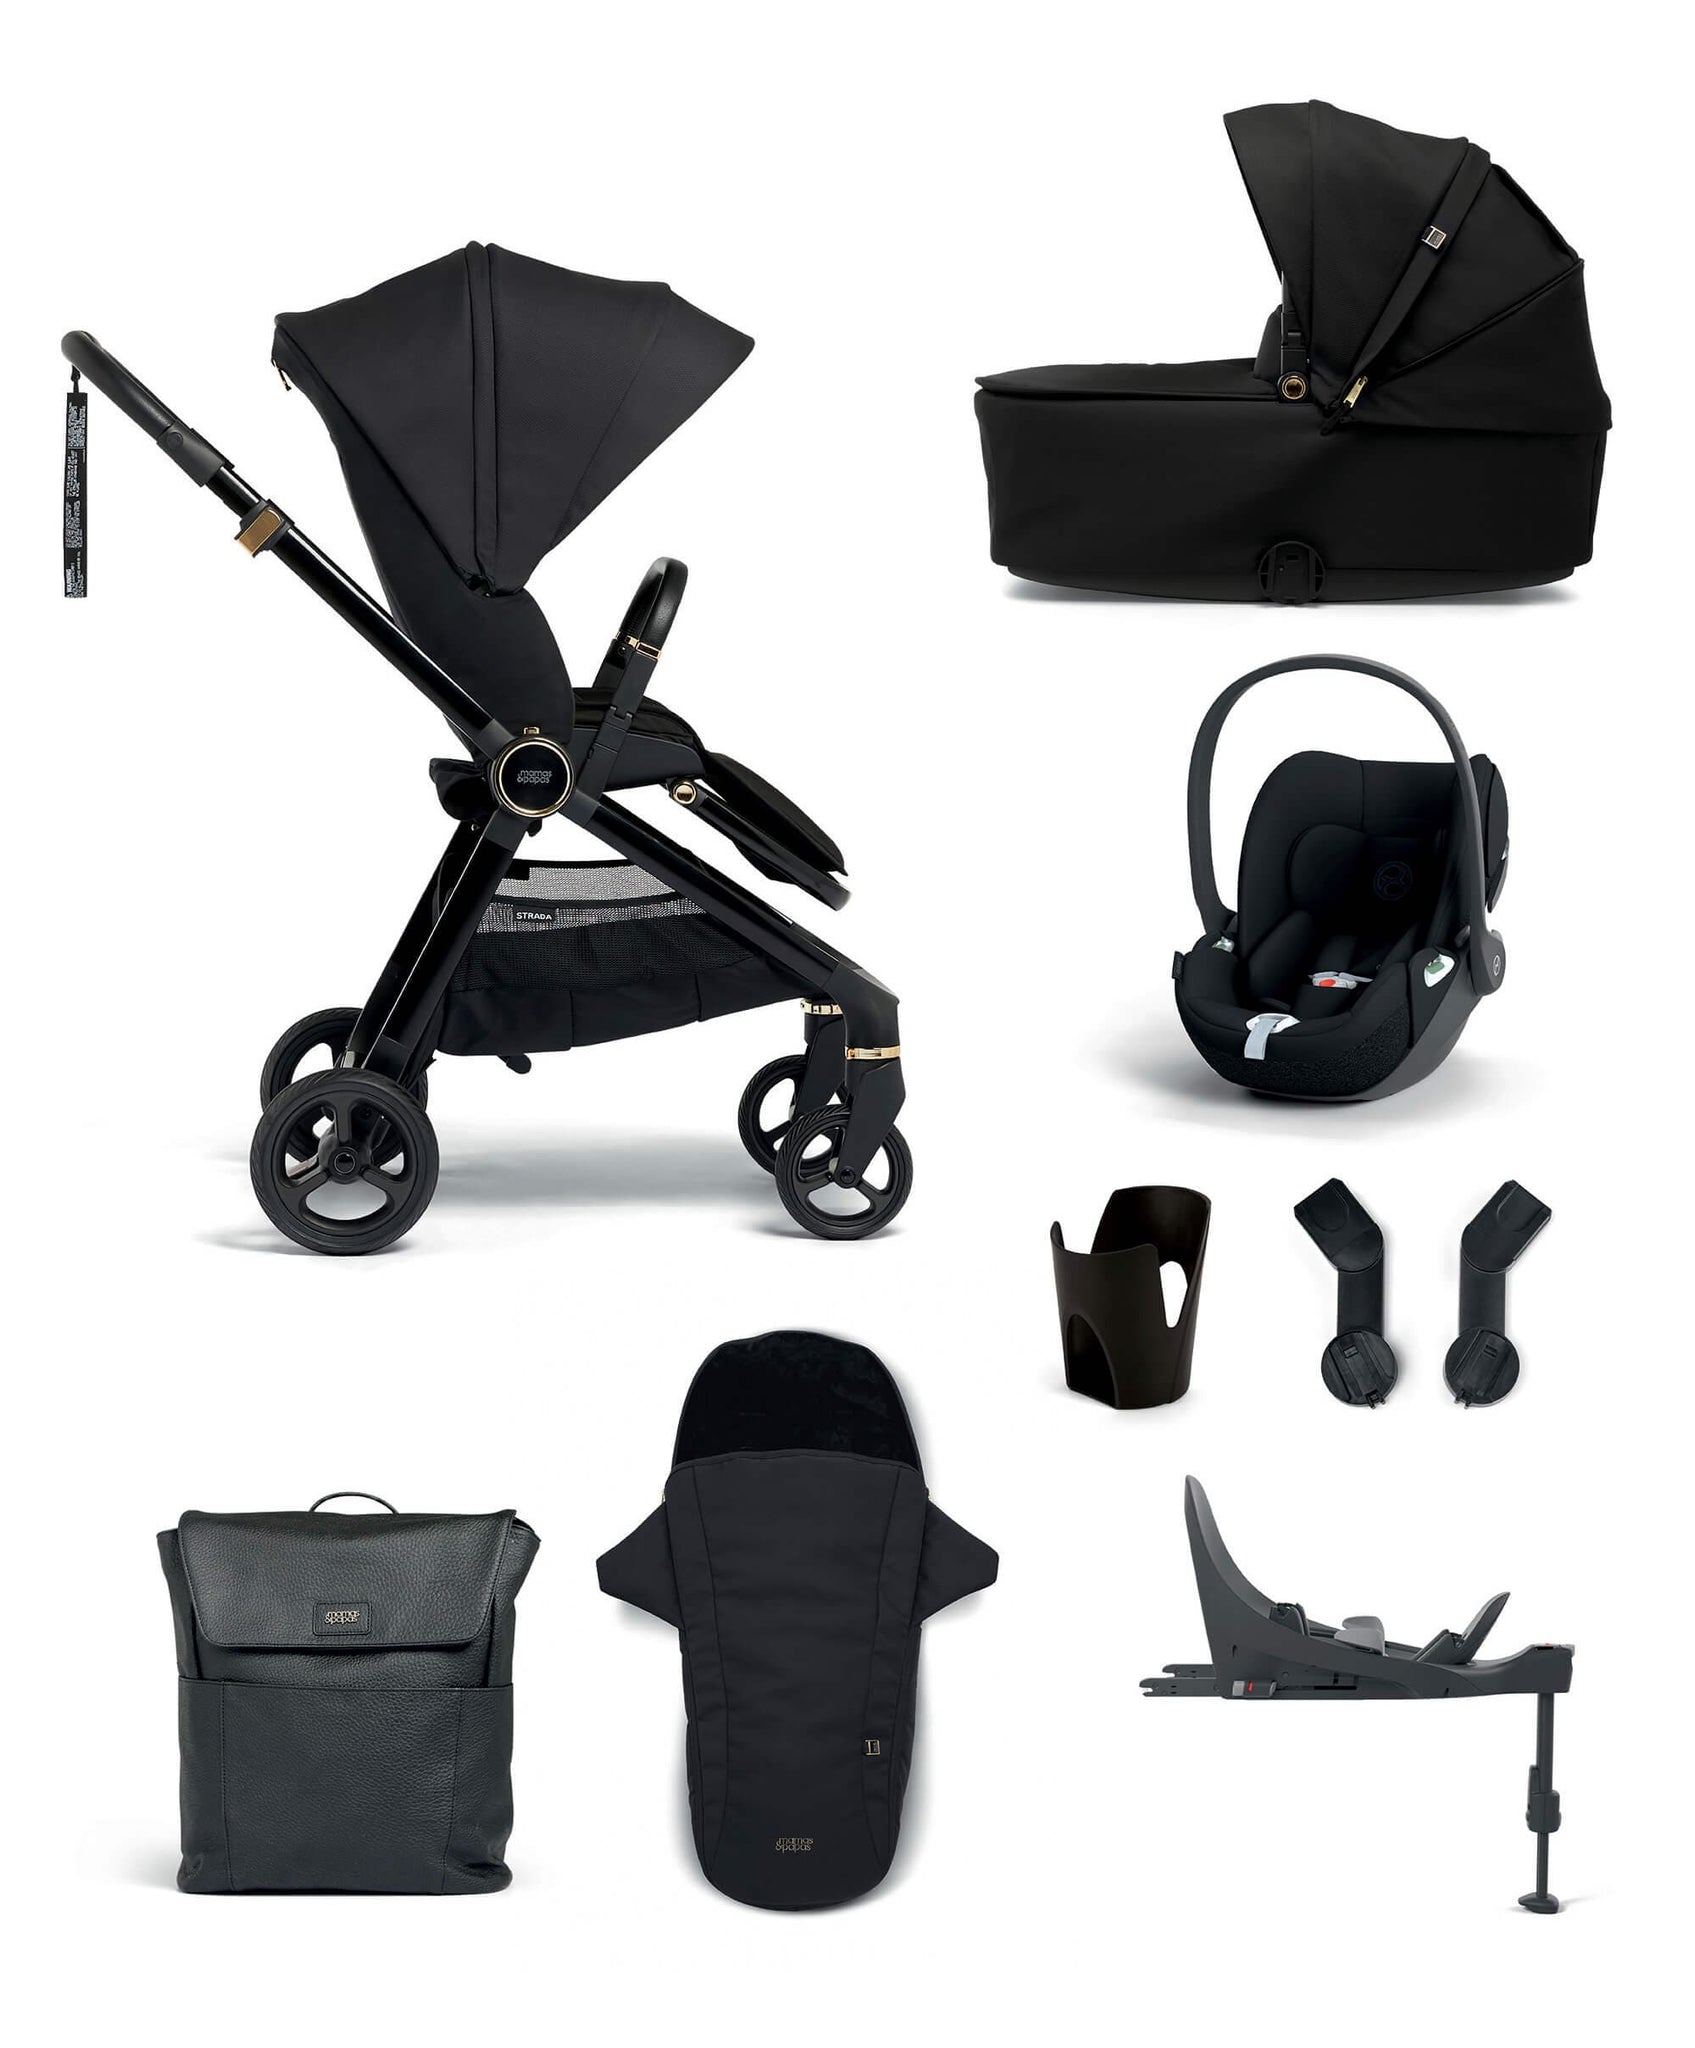 Cybex Cloud T i-Size PLUS Car Seat - Sepia Black – UK Baby Centre